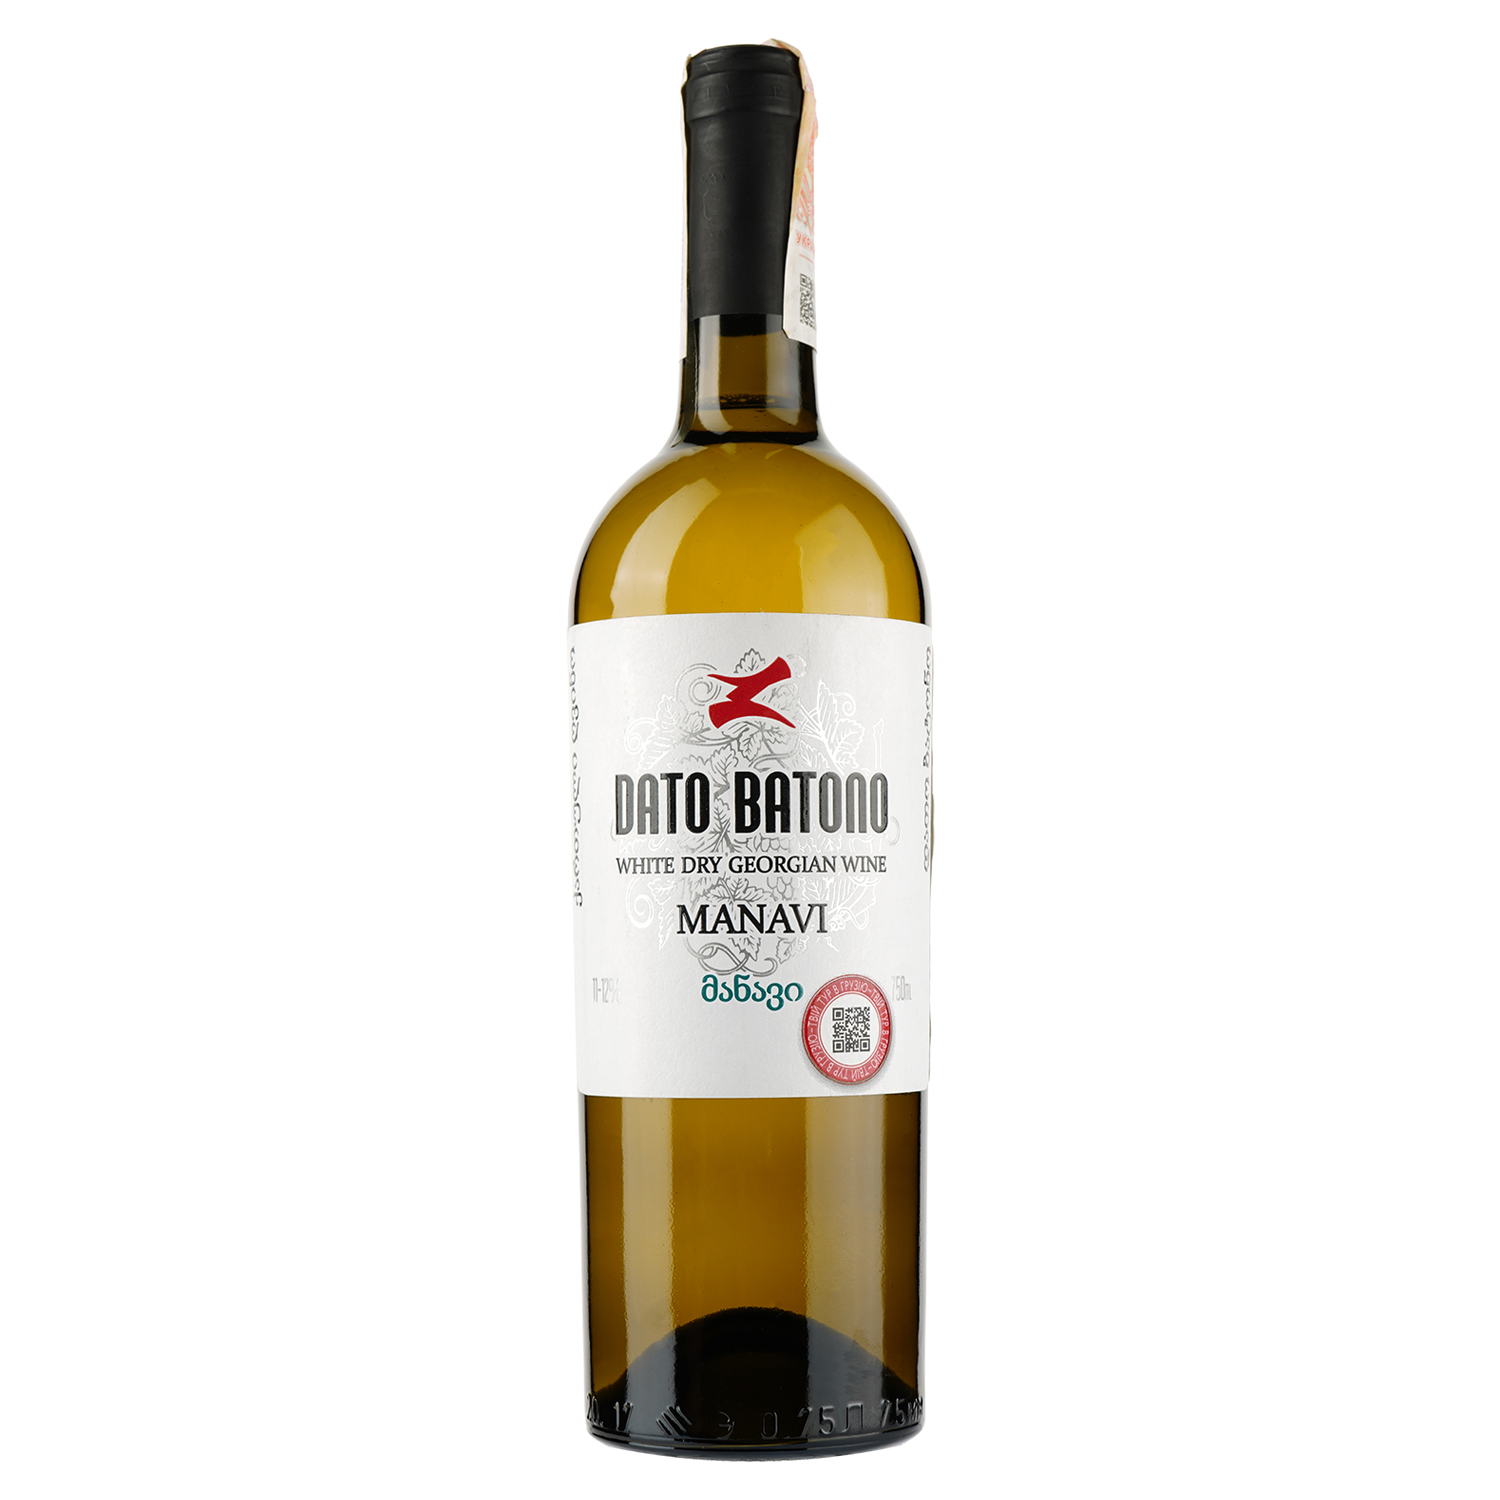 Вино Dato Batono Manavi, белое, сухое, 11-12%, 0,75 л (854152) - фото 1